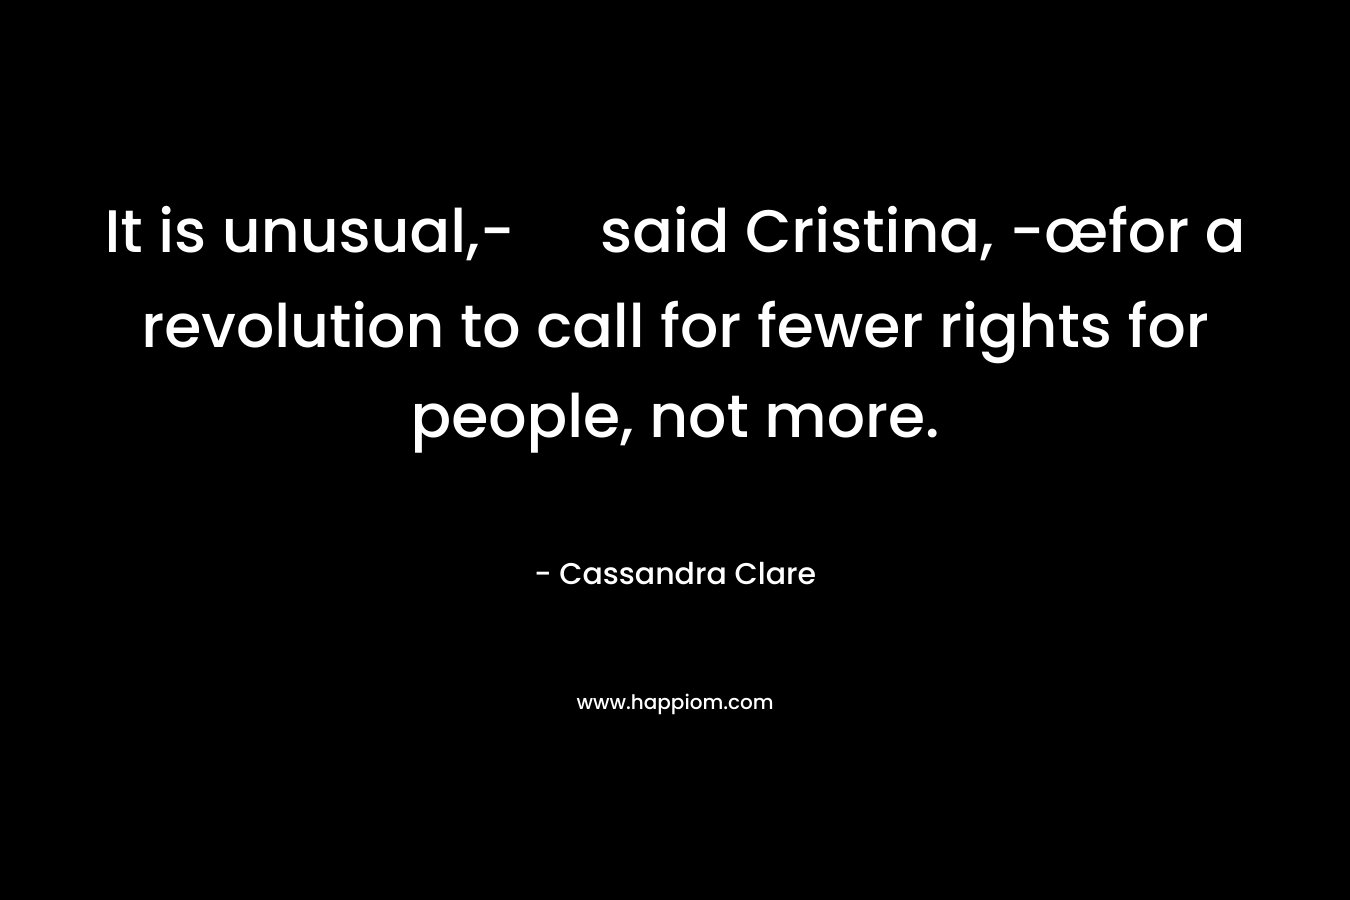 It is unusual,- said Cristina, -œfor a revolution to call for fewer rights for people, not more.